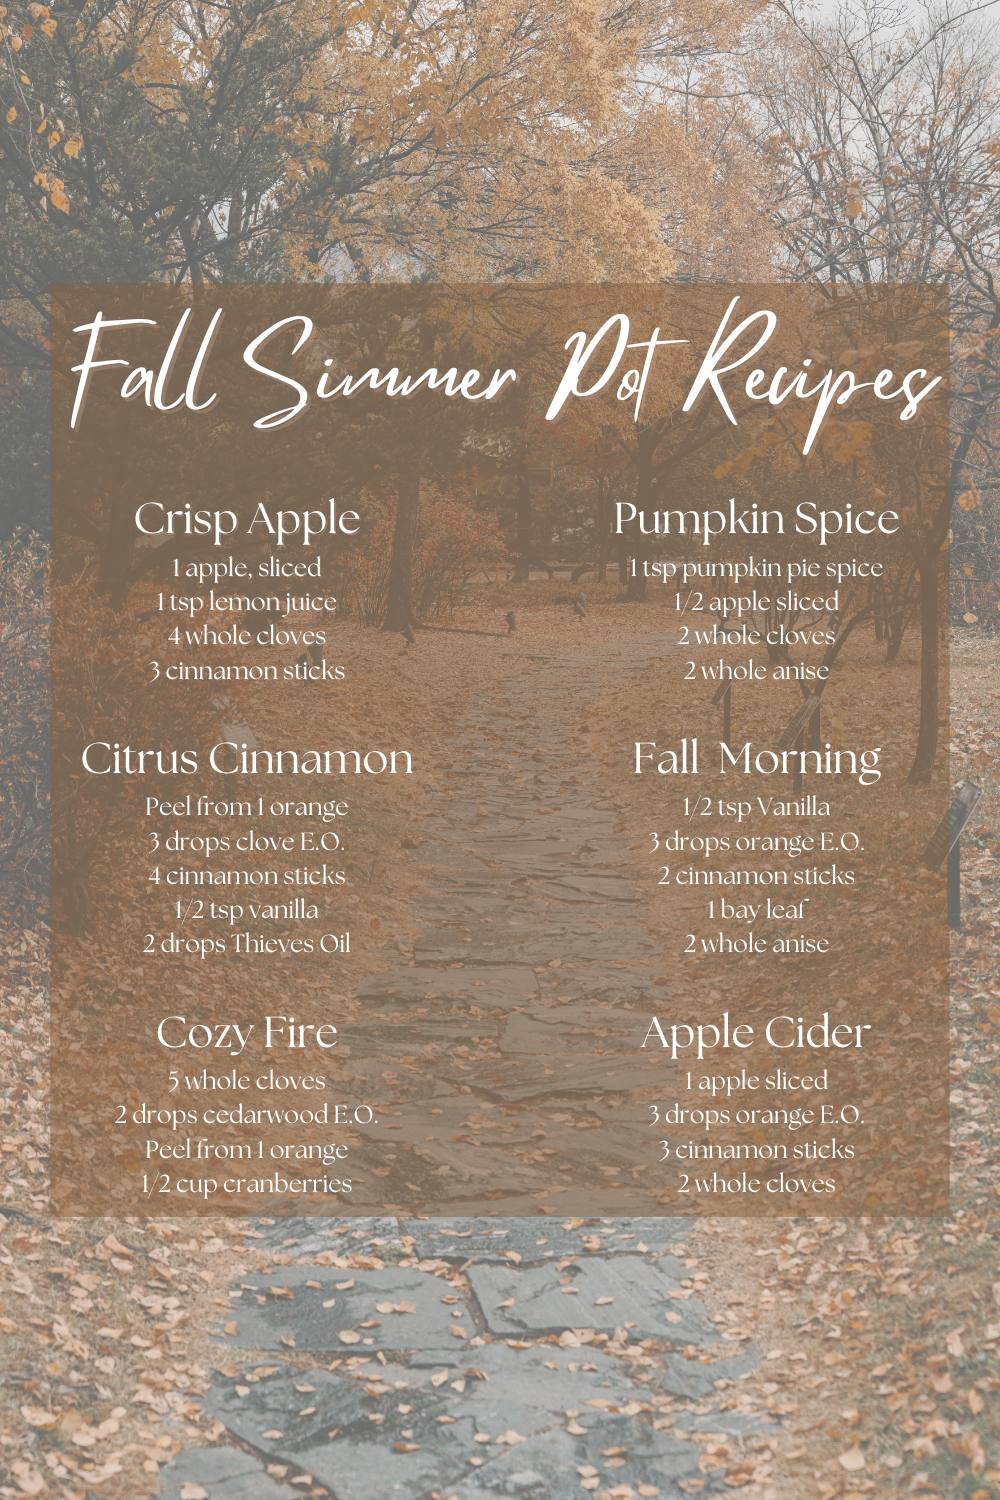 Fall Simmer Pot Recipes